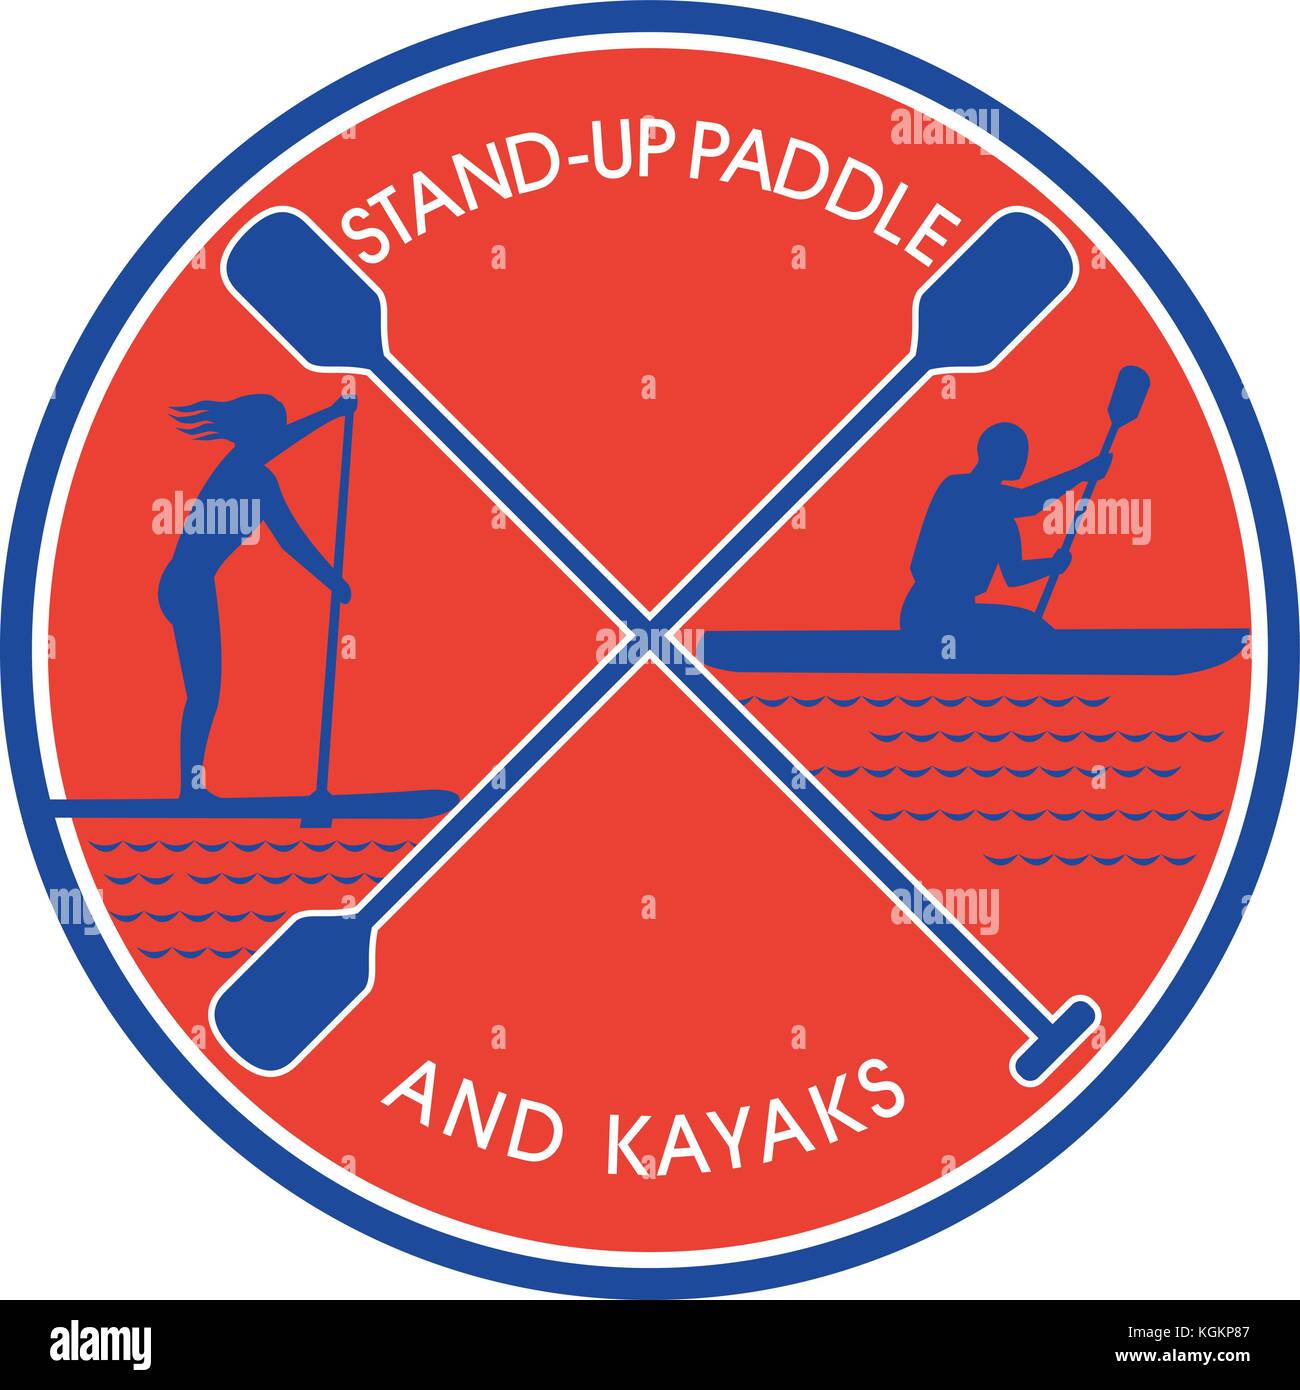 Retro Style Abbildung der weiblichen auf Stand-up Paddle oder sup und männlichen auf Kajak paddeln mit gekreuzten Paddel im Zentrum innerhalb des Kreises auf isolierten Ba Stock Vektor